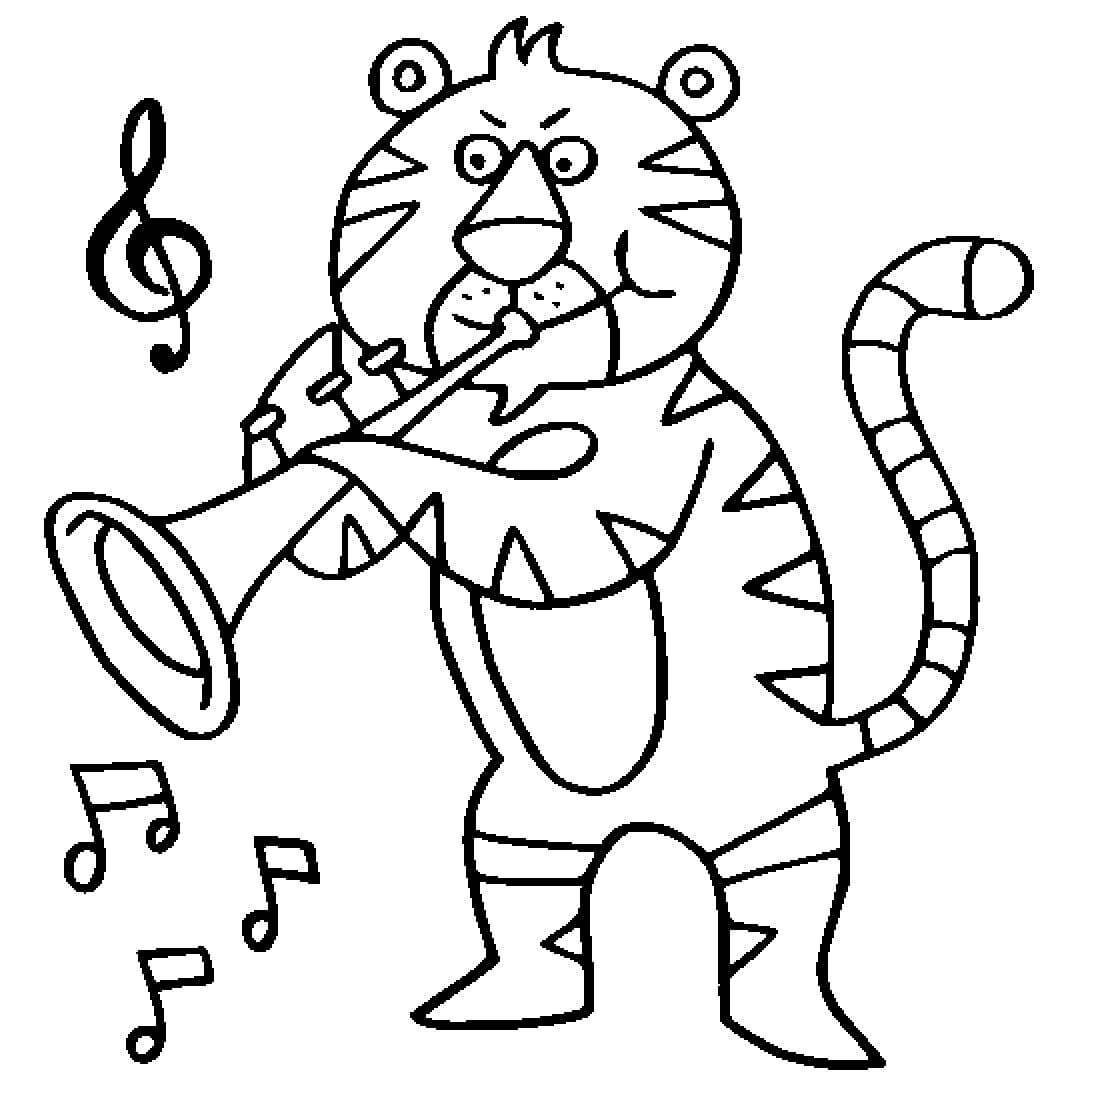 트럼펫을 연주하는 호랑이 그림 coloring page